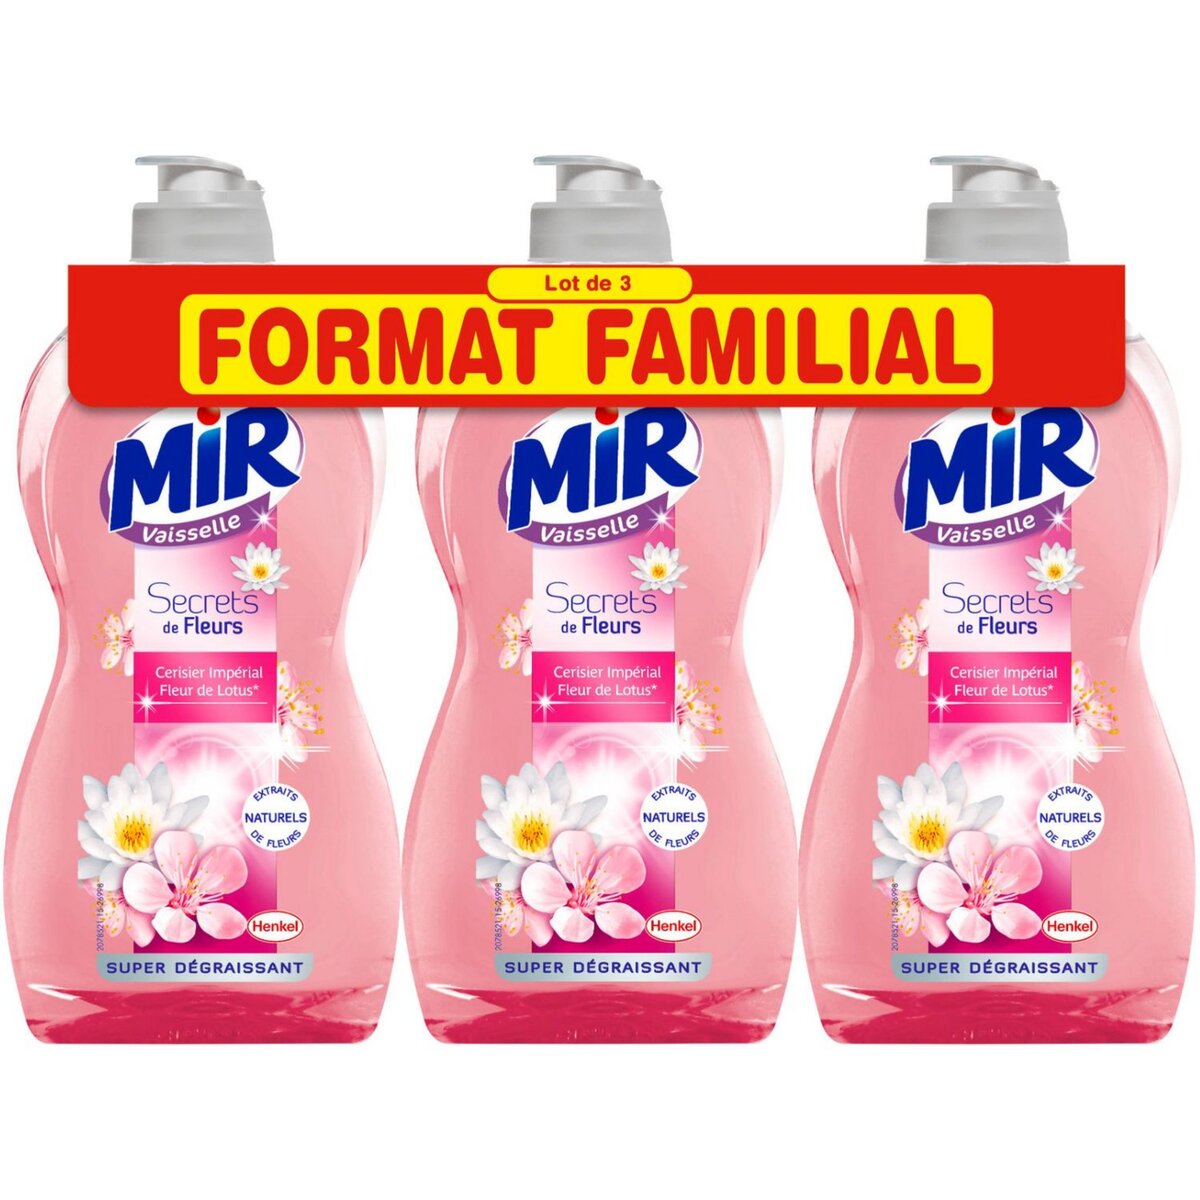 MIR Mir liquide vaisselle secret cerisier 3x500ml lot familial